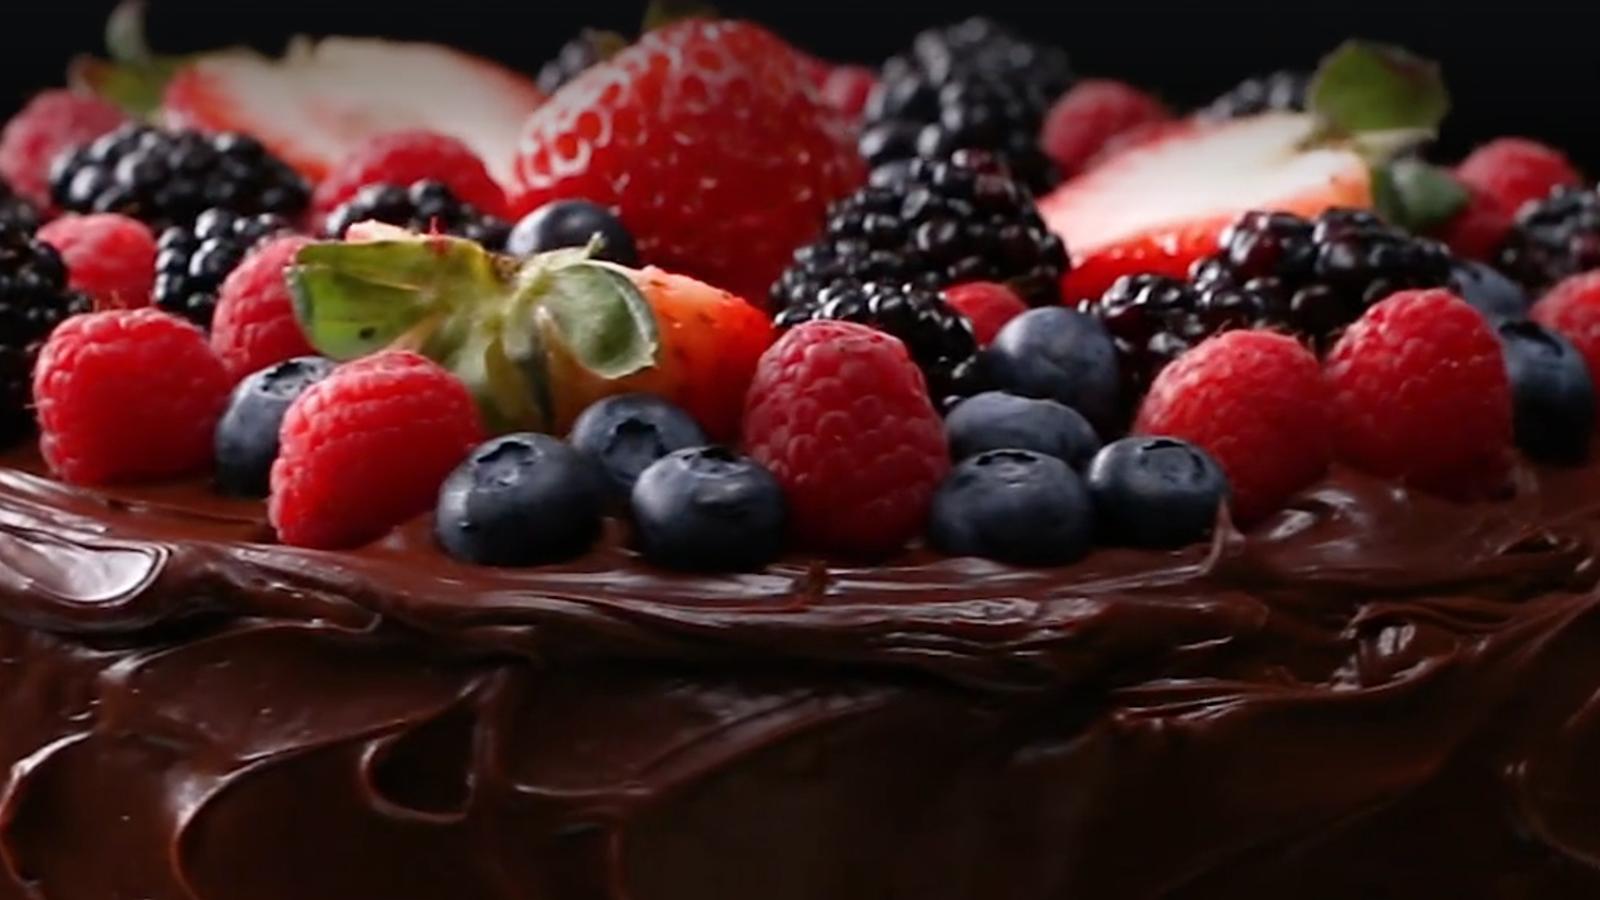 Gâteau décadent au chocolat 100% végan, sans produits laitiers, ni oeufs